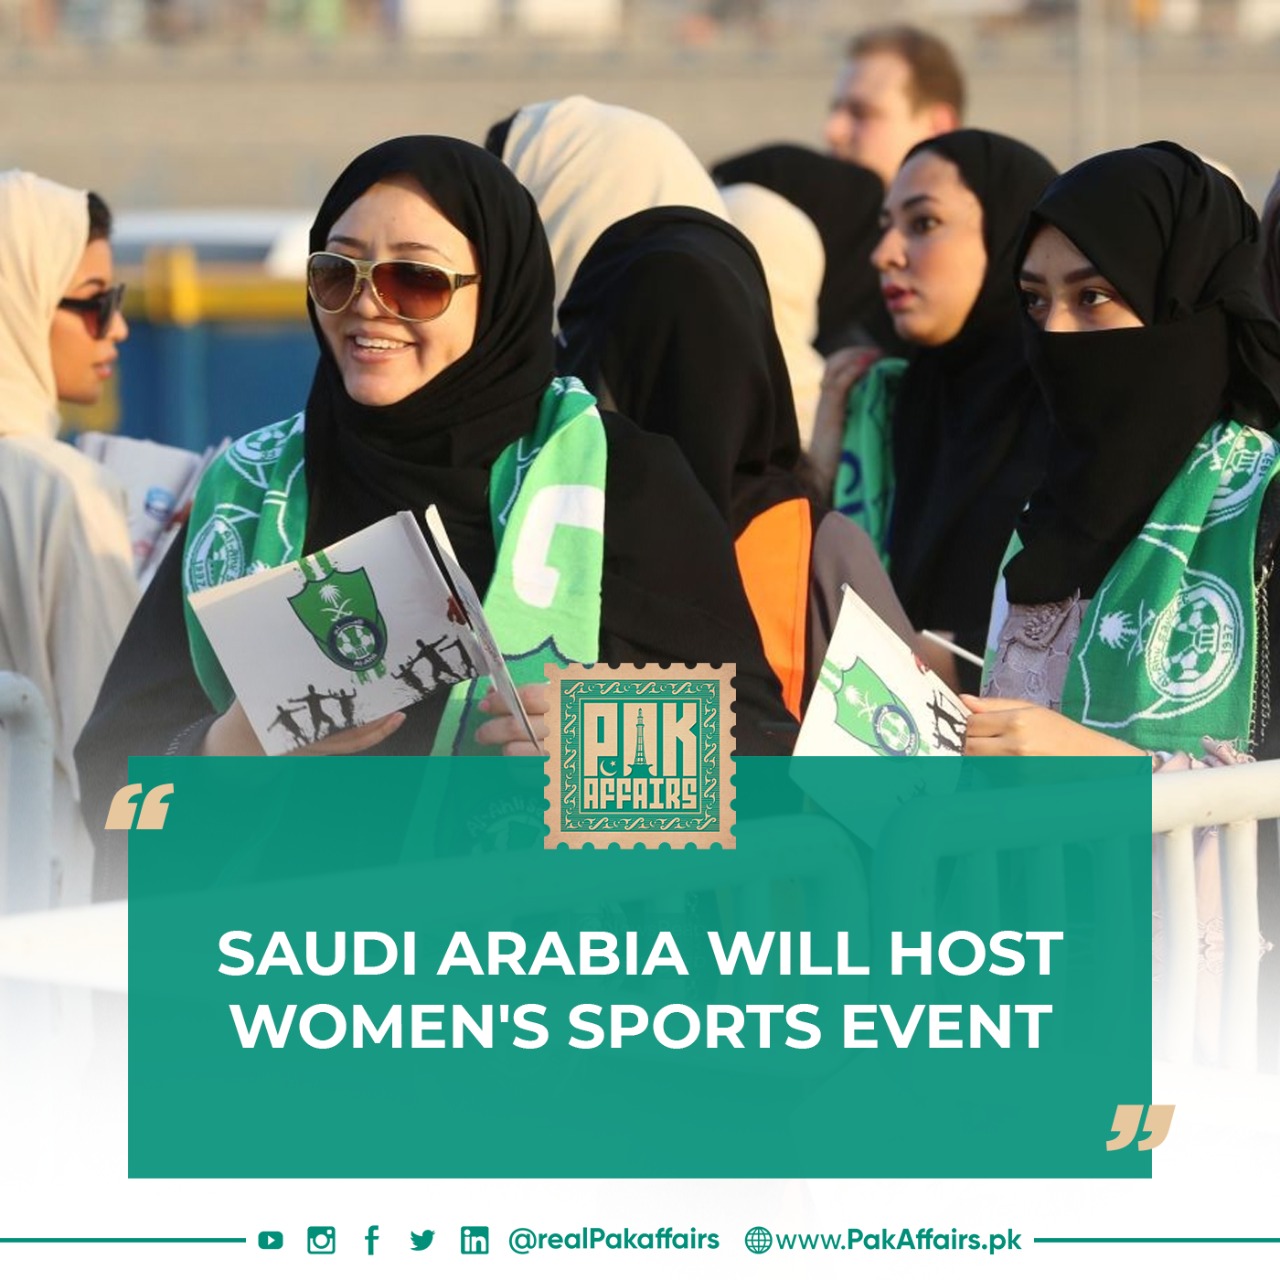 Saudi Arabia will host a women's sports event